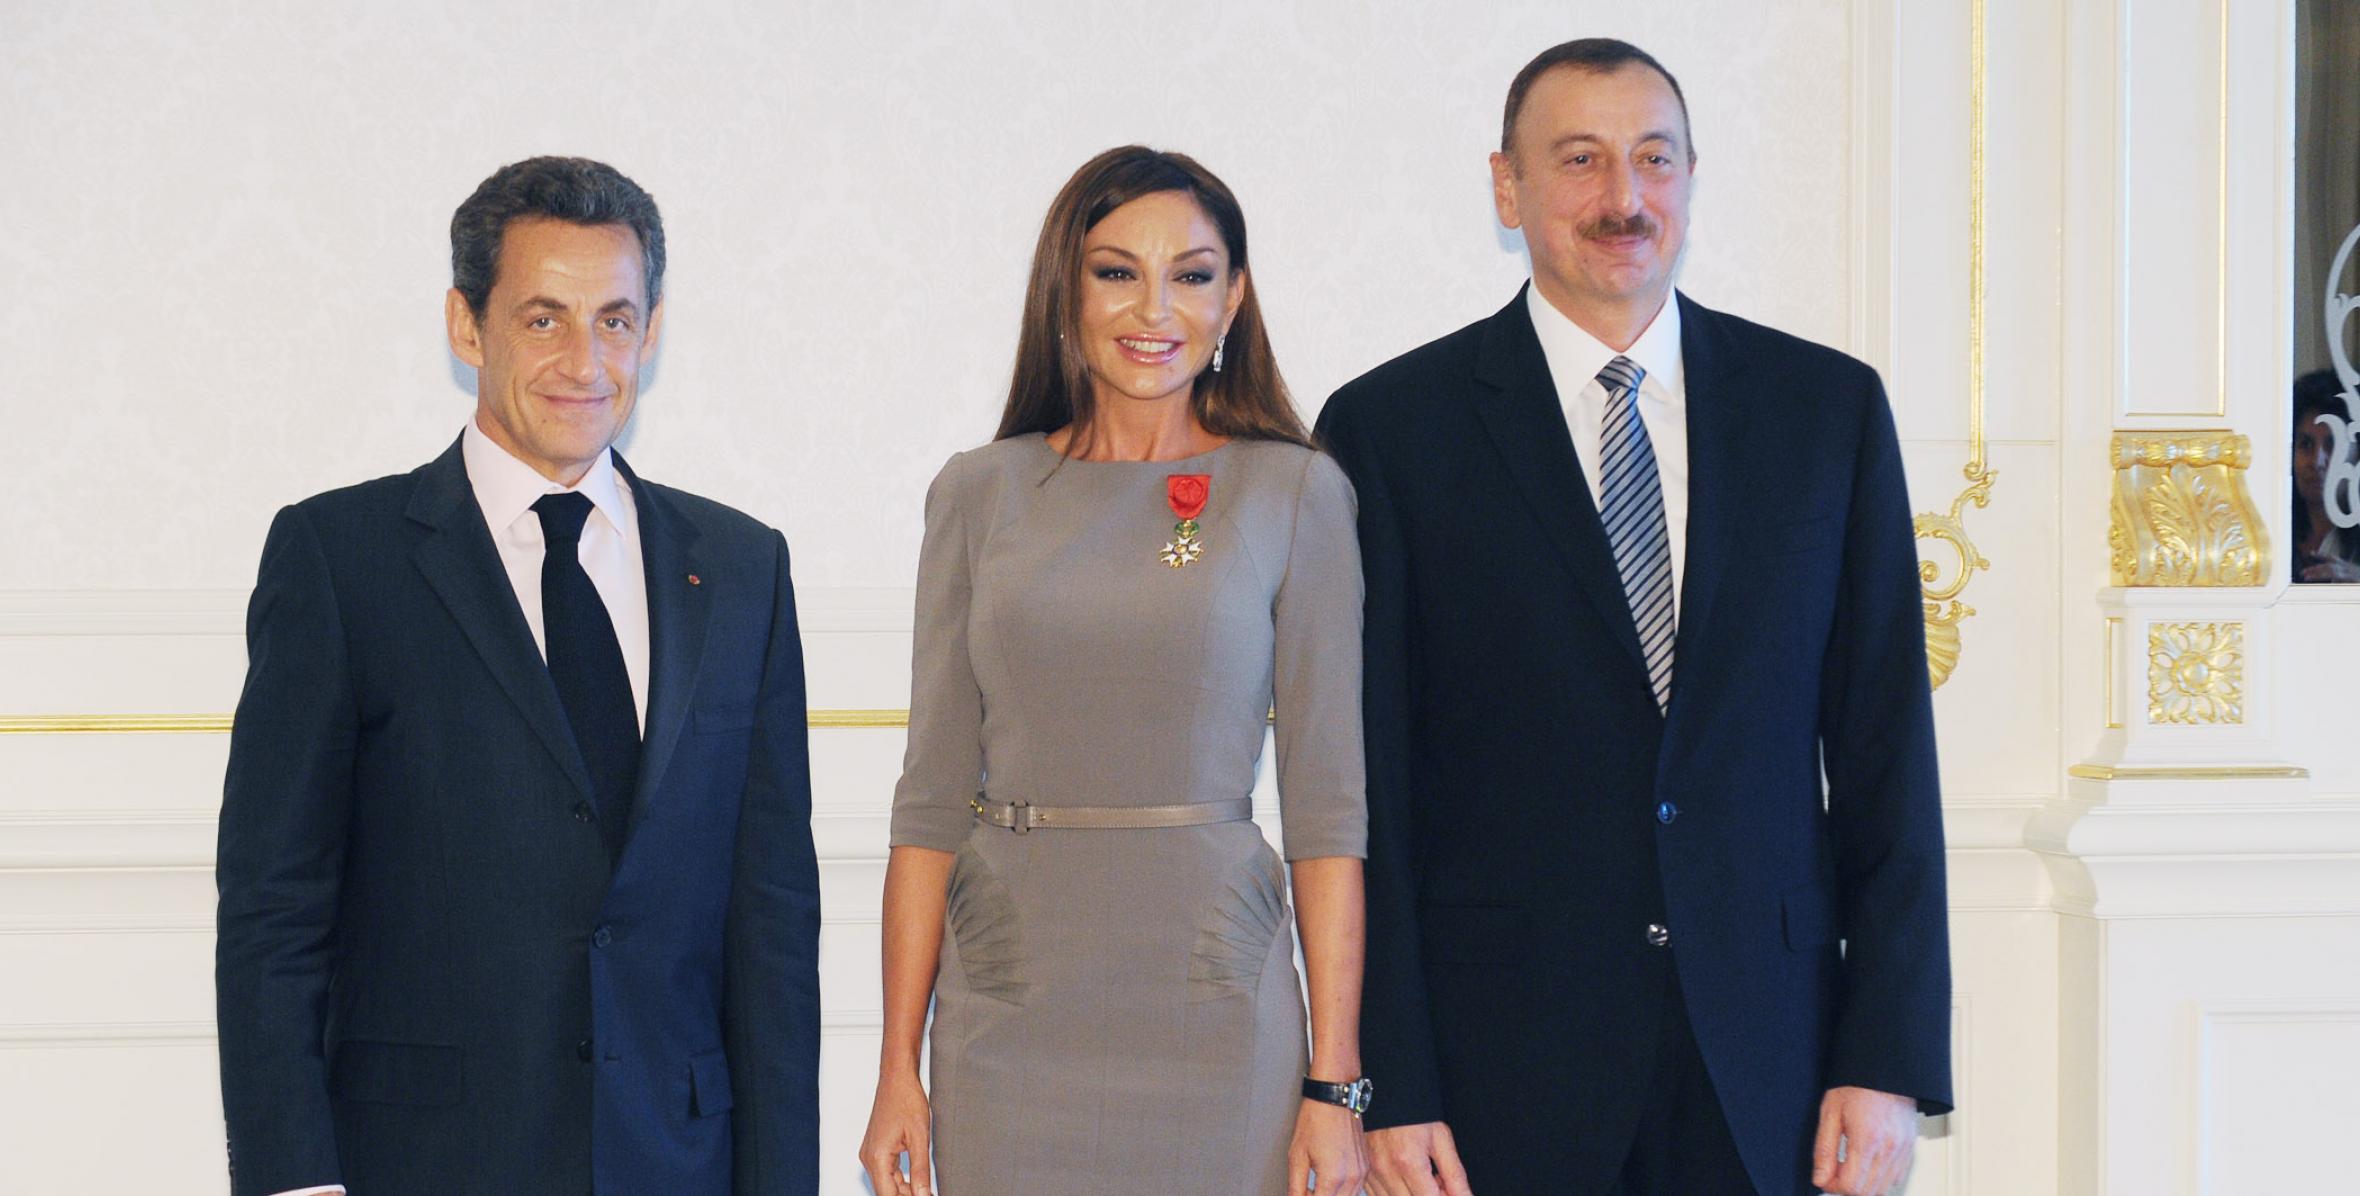 Состоялась церемония награждения Мехрибан Алиевой государственным орденом Французской Республики «Офицер Почетного легиона»